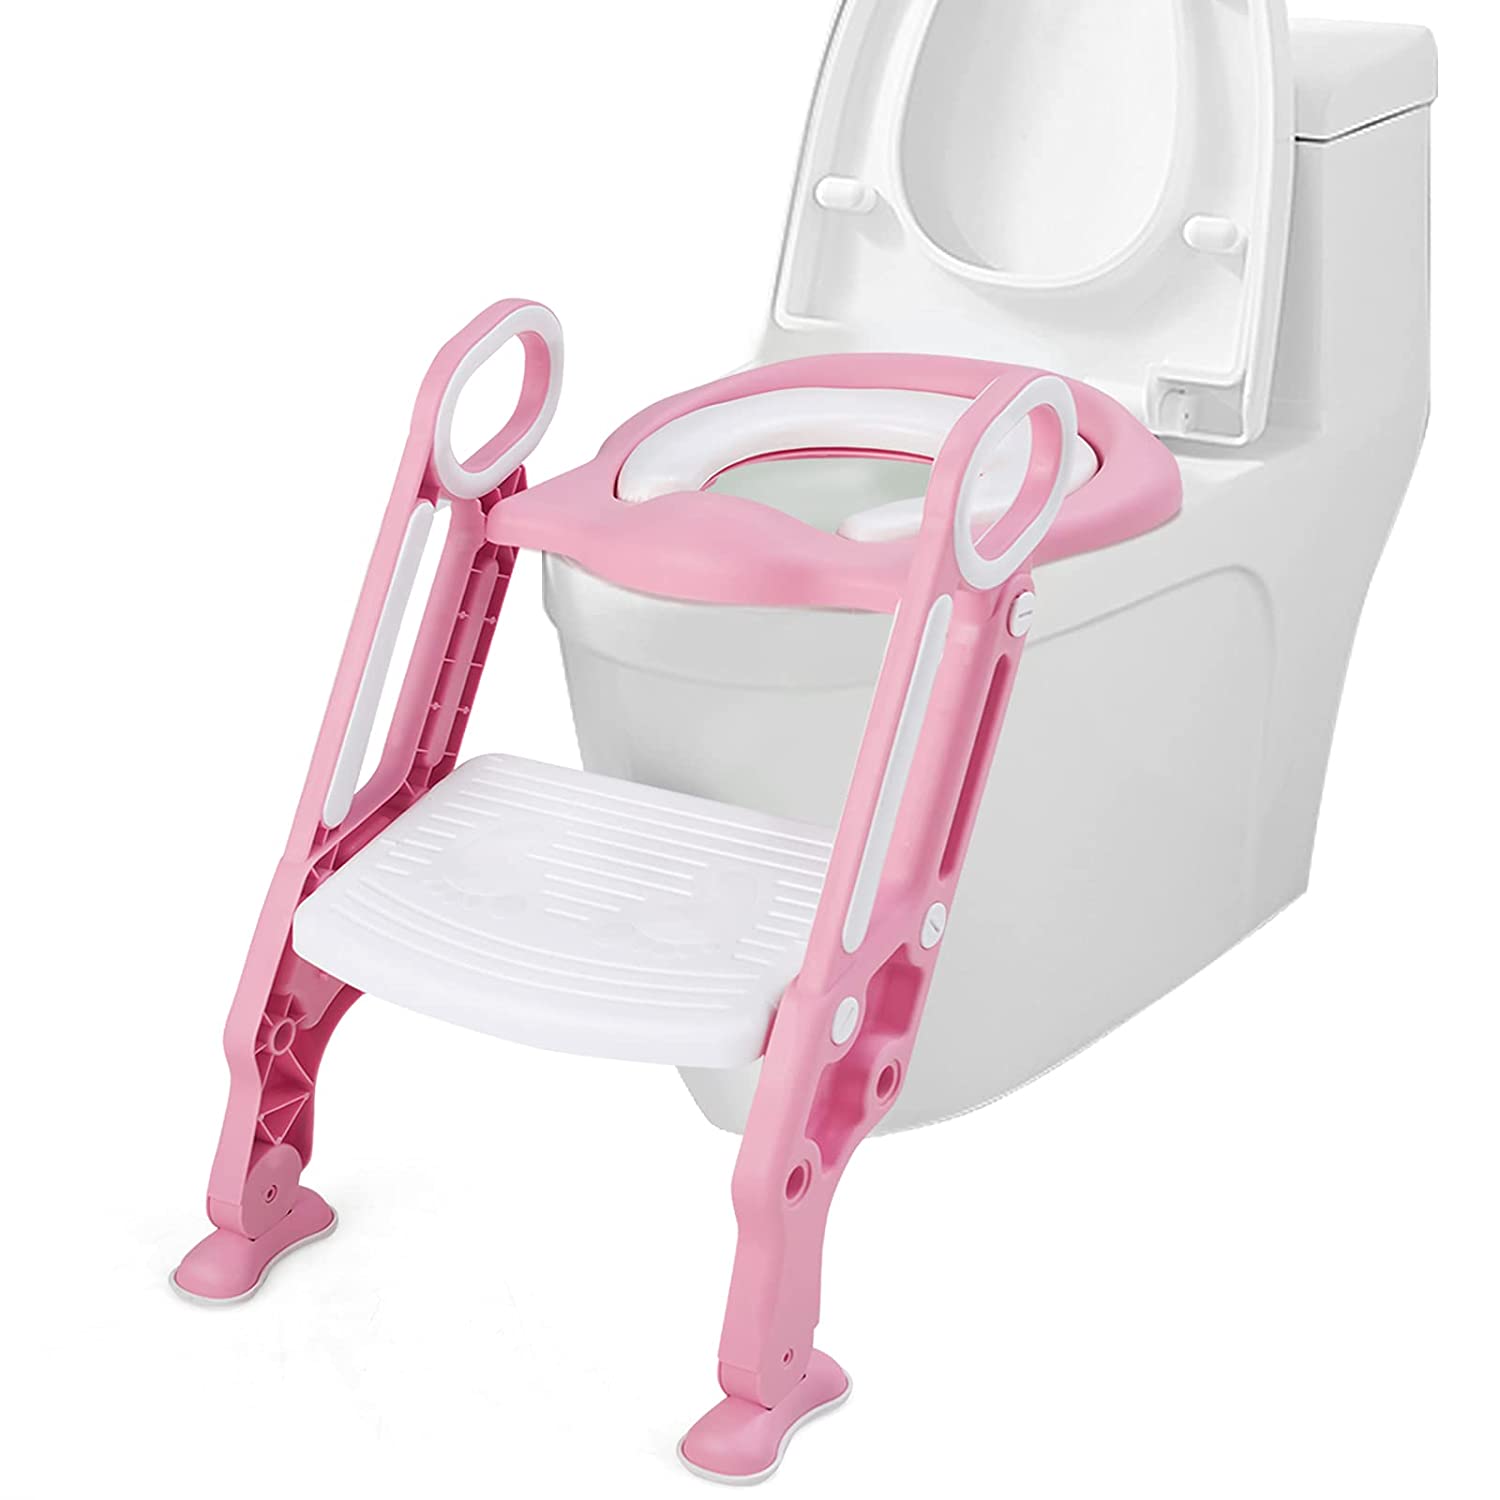 Kinder Toilettensitz höhenverstellbar kaufen | home24